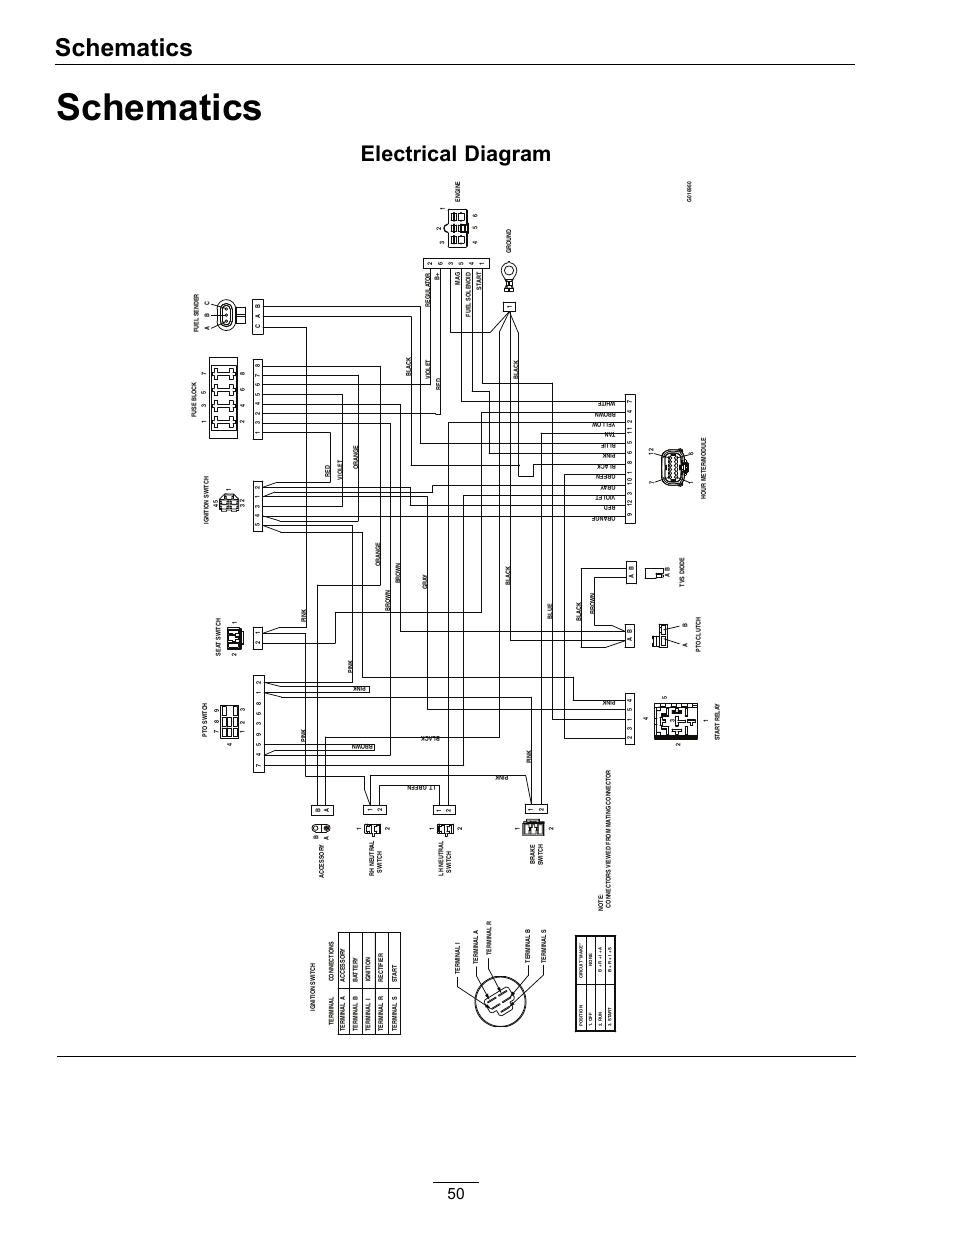 wellcraft wiring diagram